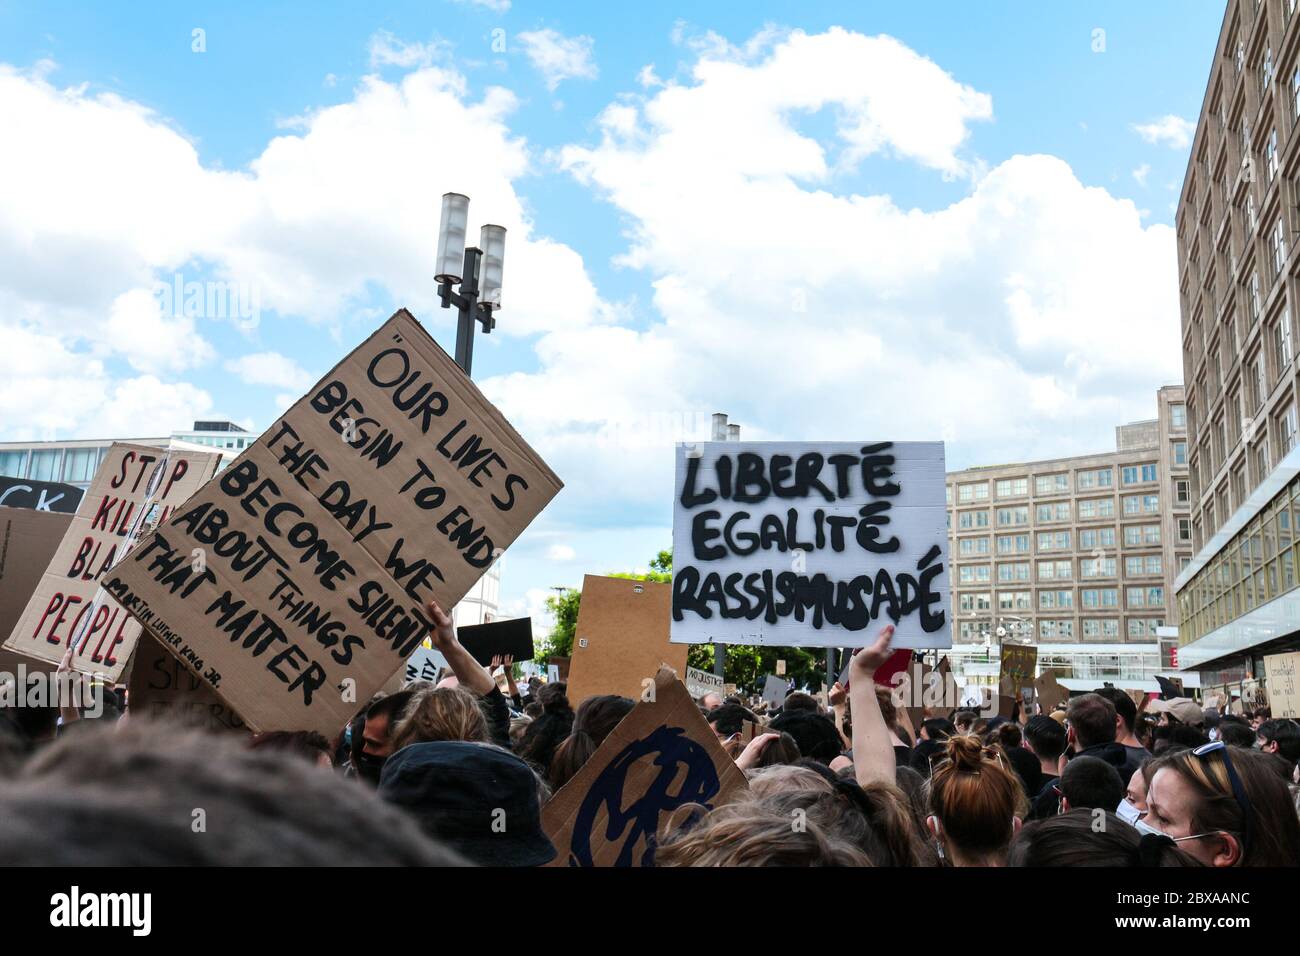 Il segno "Liberté egalité rassismusadé" (liberta', uguaglianza e razzismo tedesco addio) a una protesta contro la questione Black Lives ad Alexanderplatz. Foto Stock